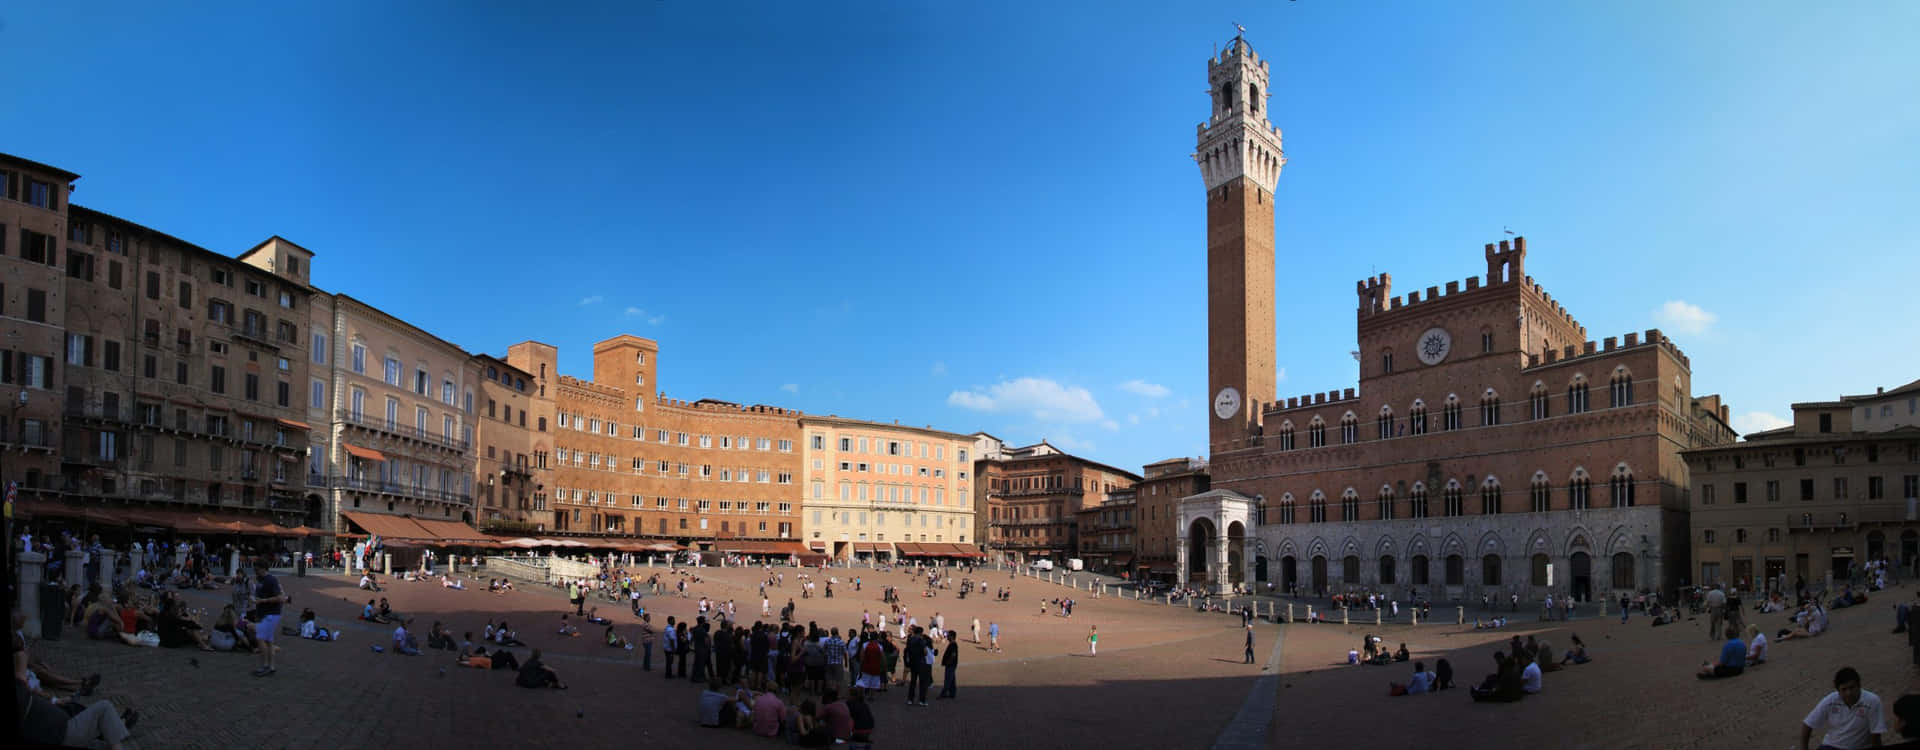 Paláciopúblico De Siena E Torre De Mangja. Papel de Parede